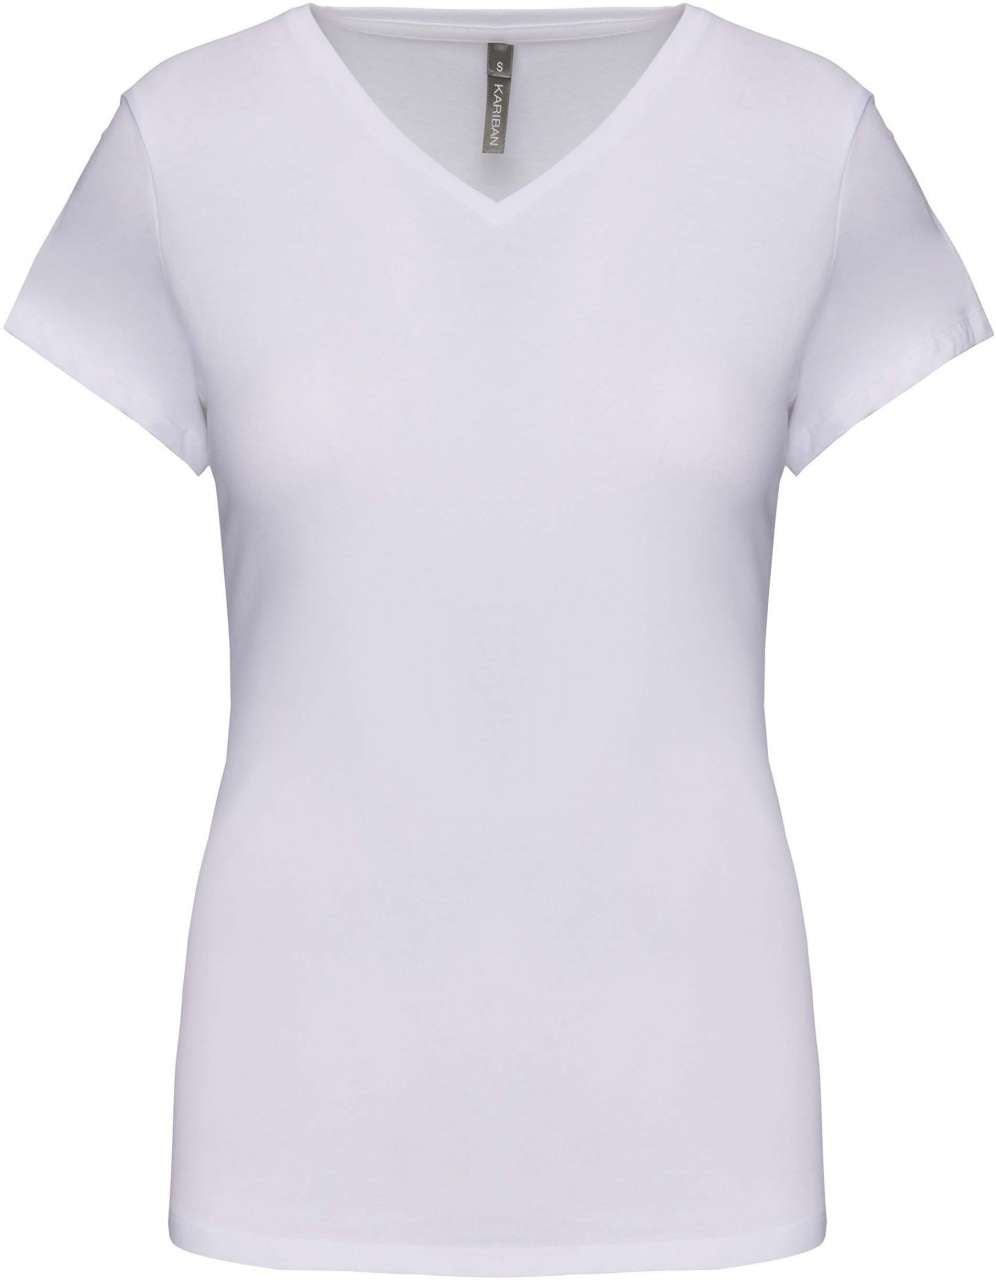 Kariban Damen T-Shirt V-Ausschnitt Classic Kurzarm V-Neck Top